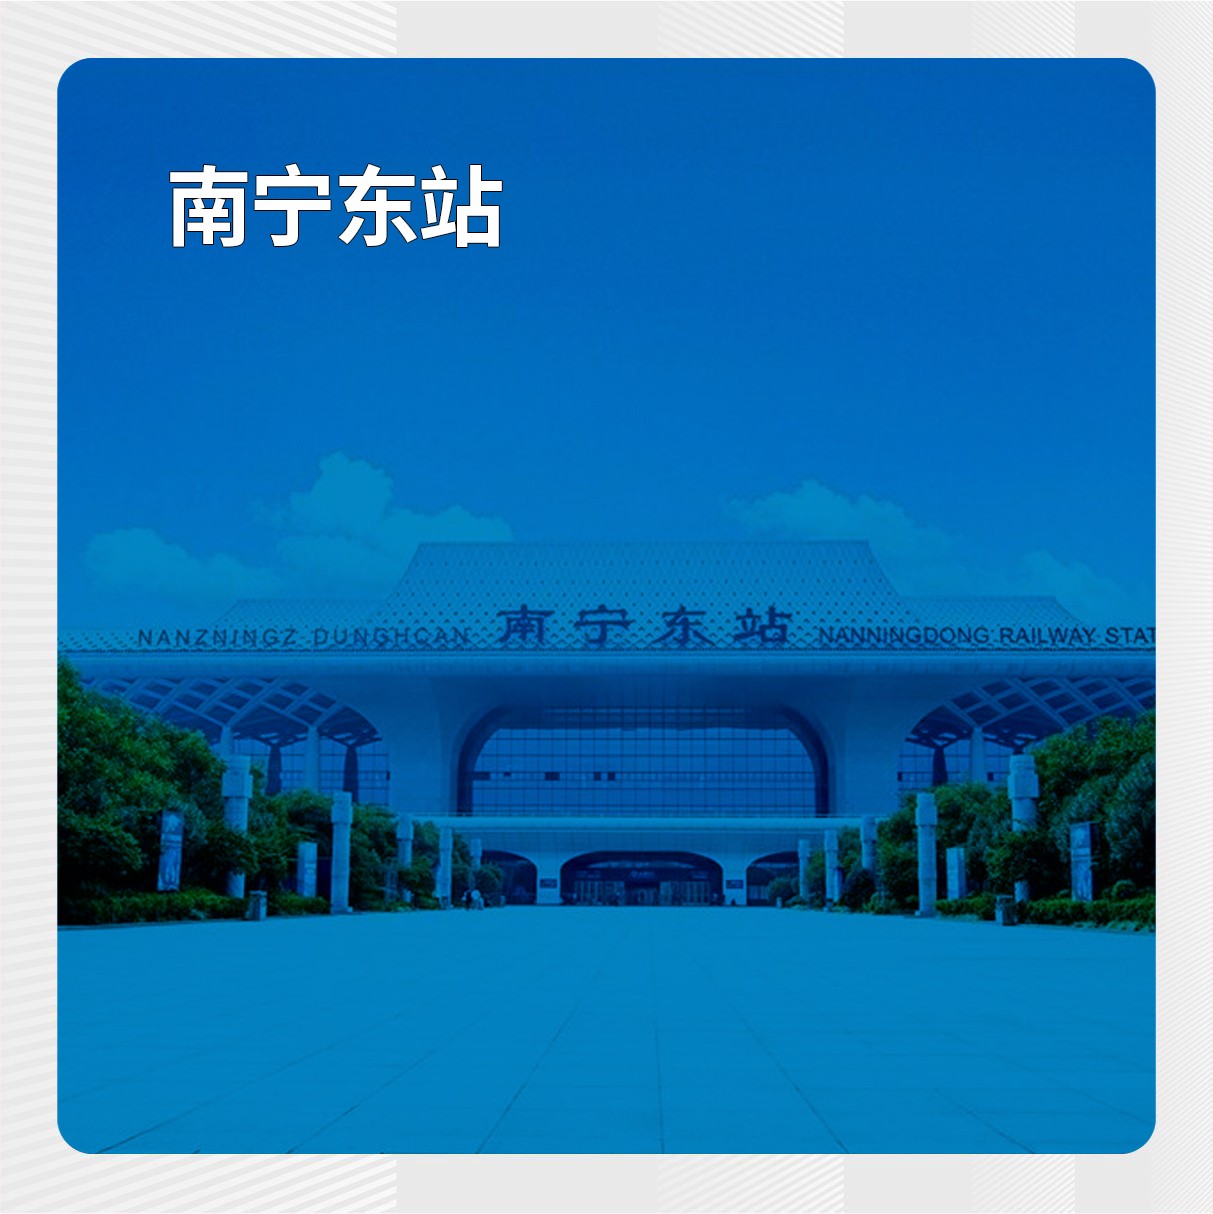 寻人启事：大家帮助转发一下(刘瑞瑞) - 山东省济南市寻人找人网站平台